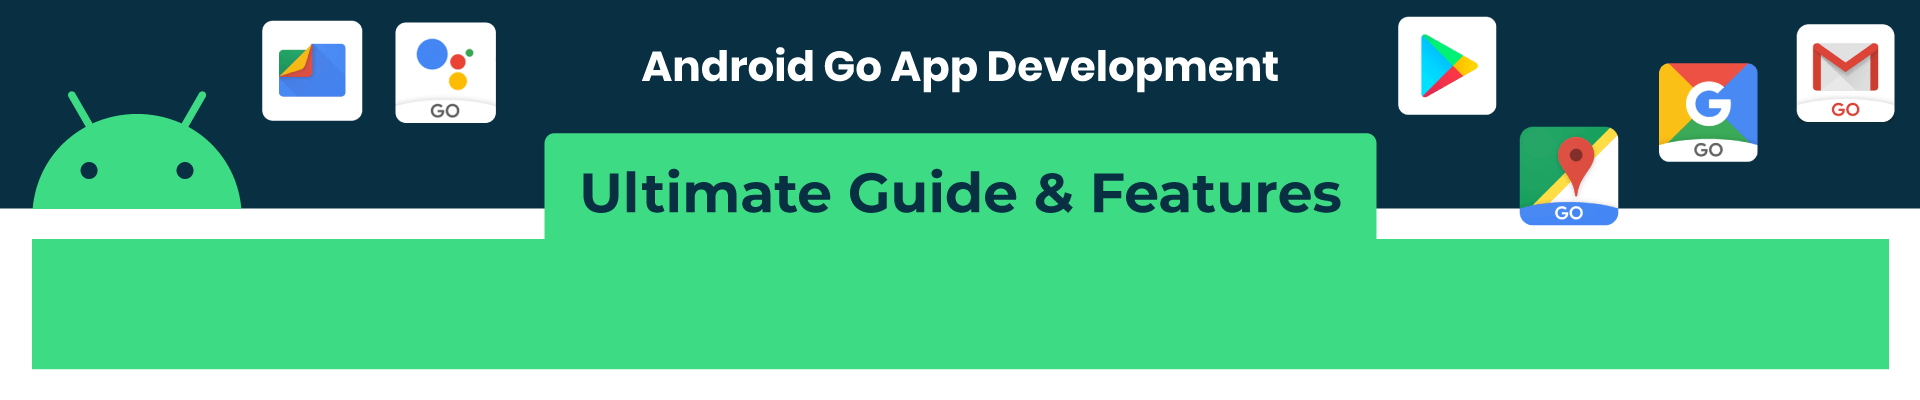 Android Go App Development